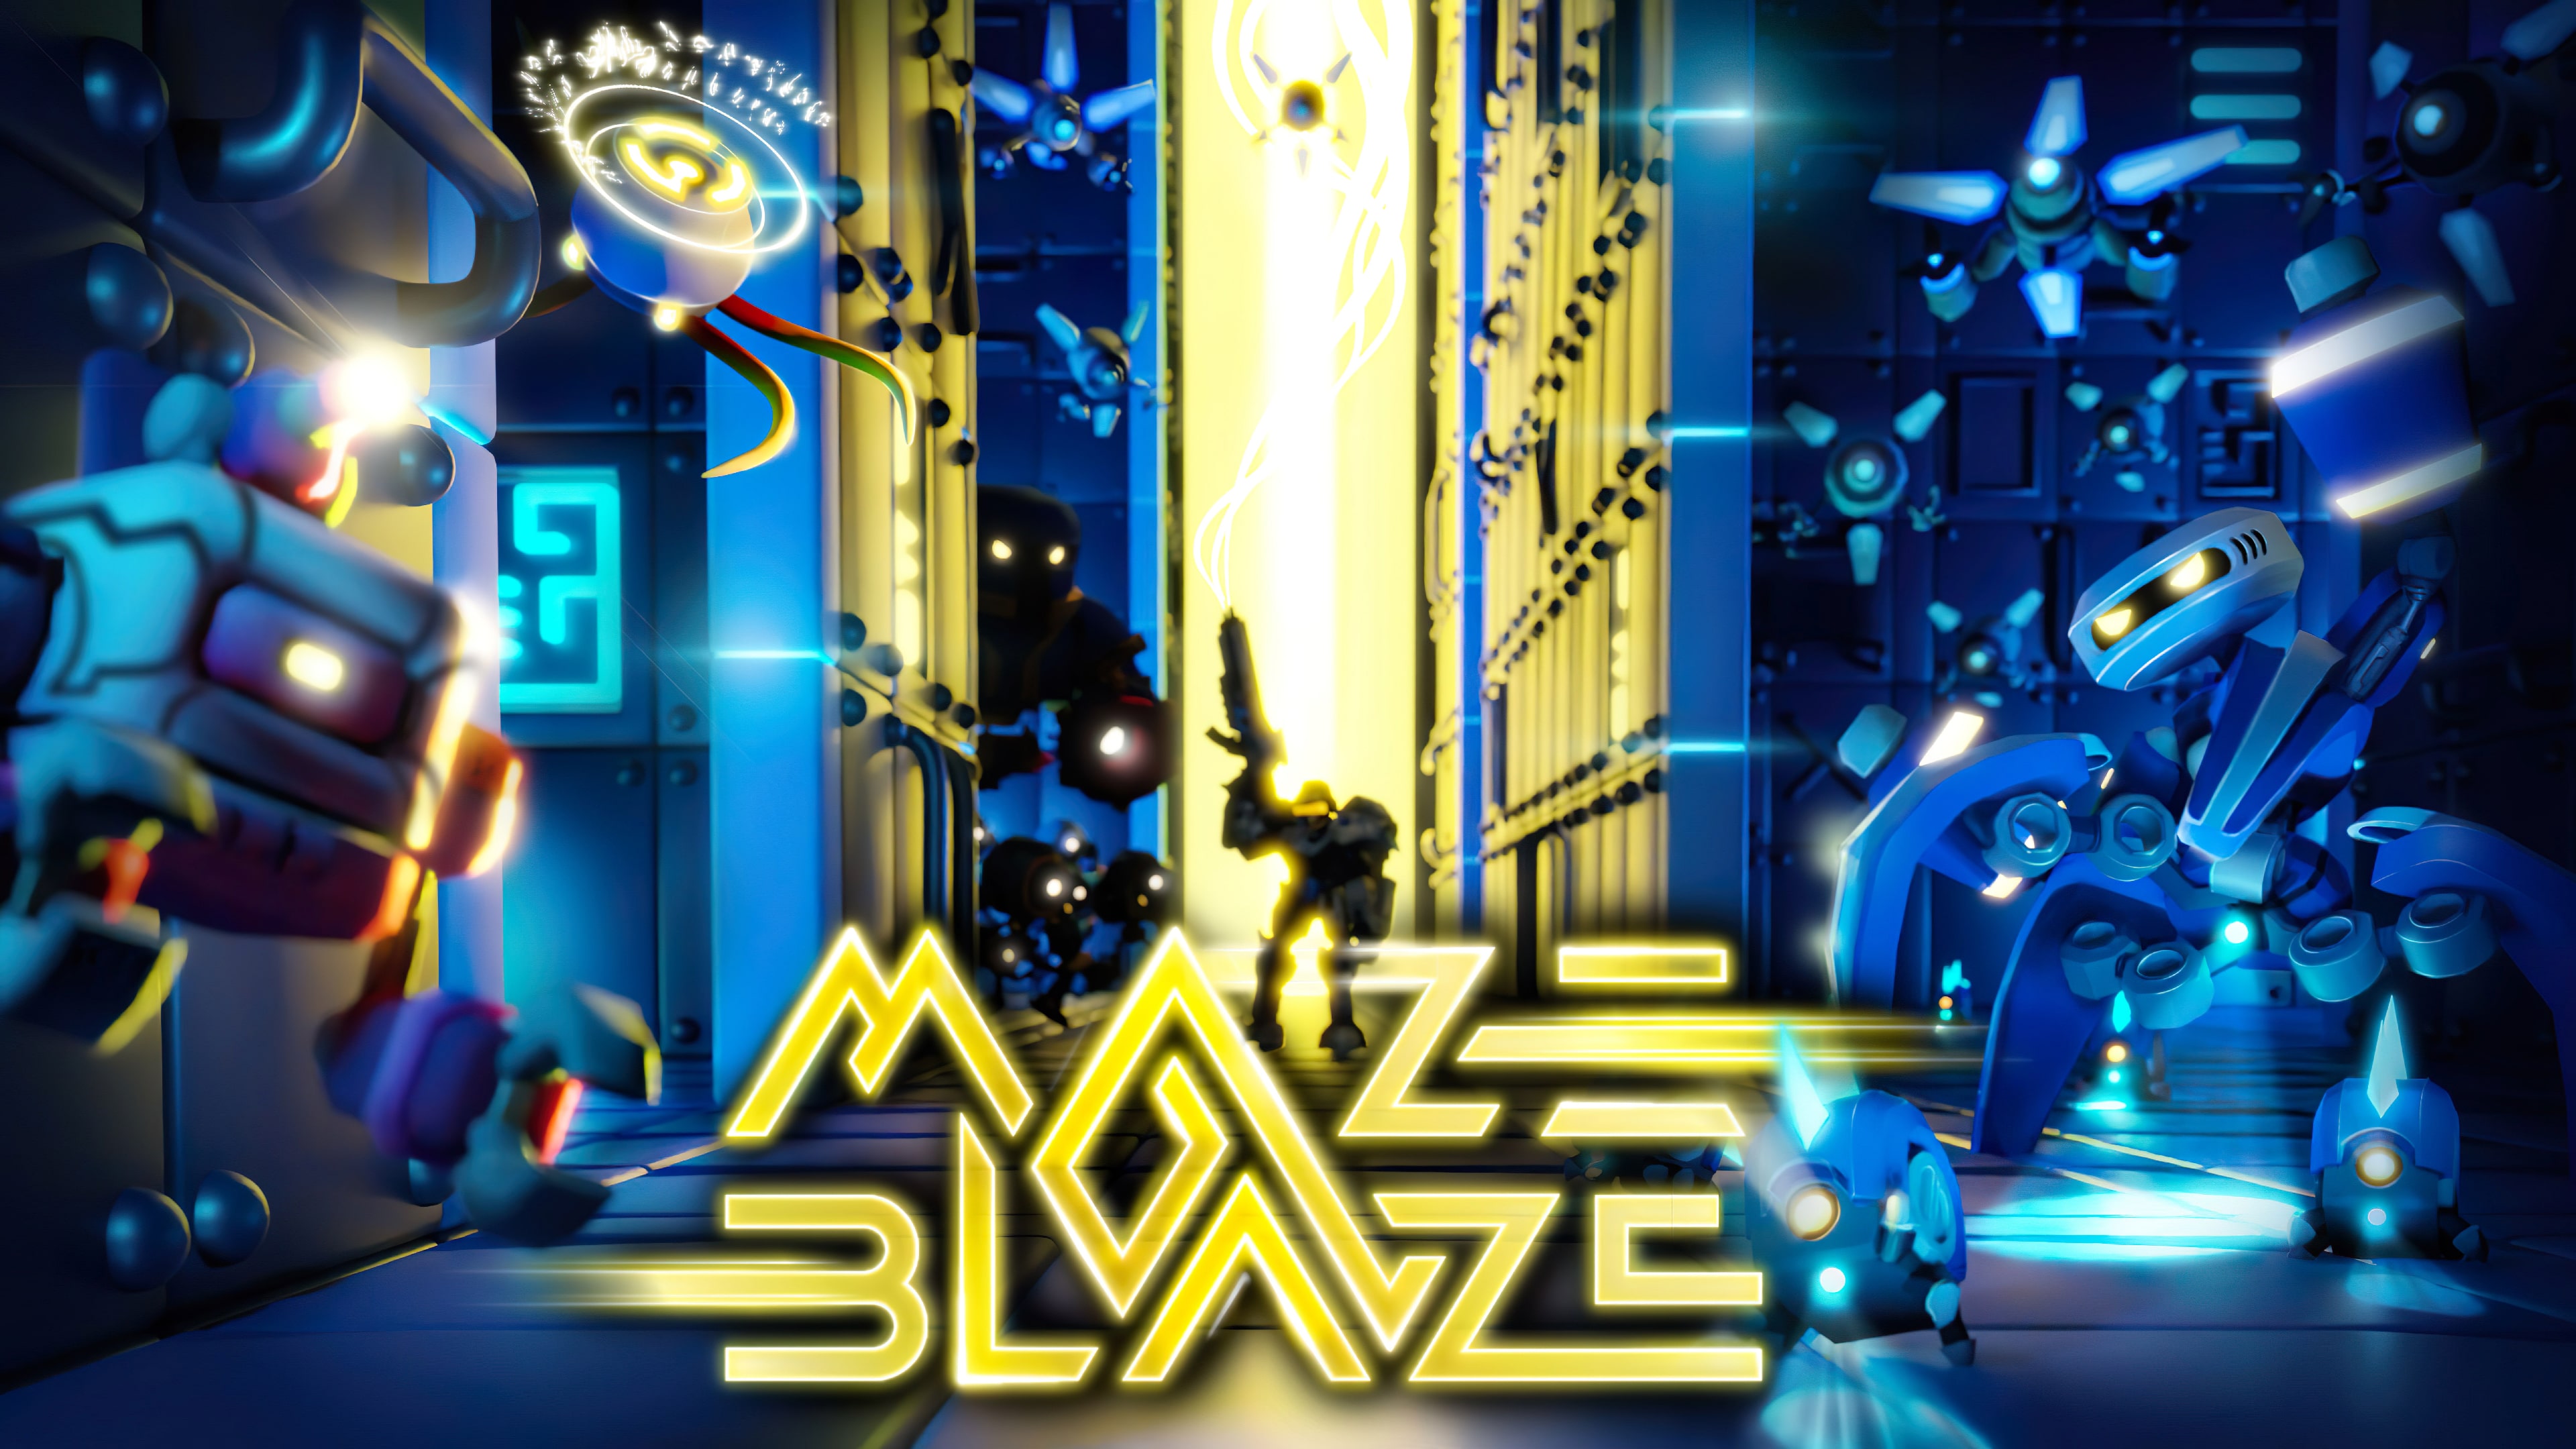 Maze Blaze (English)